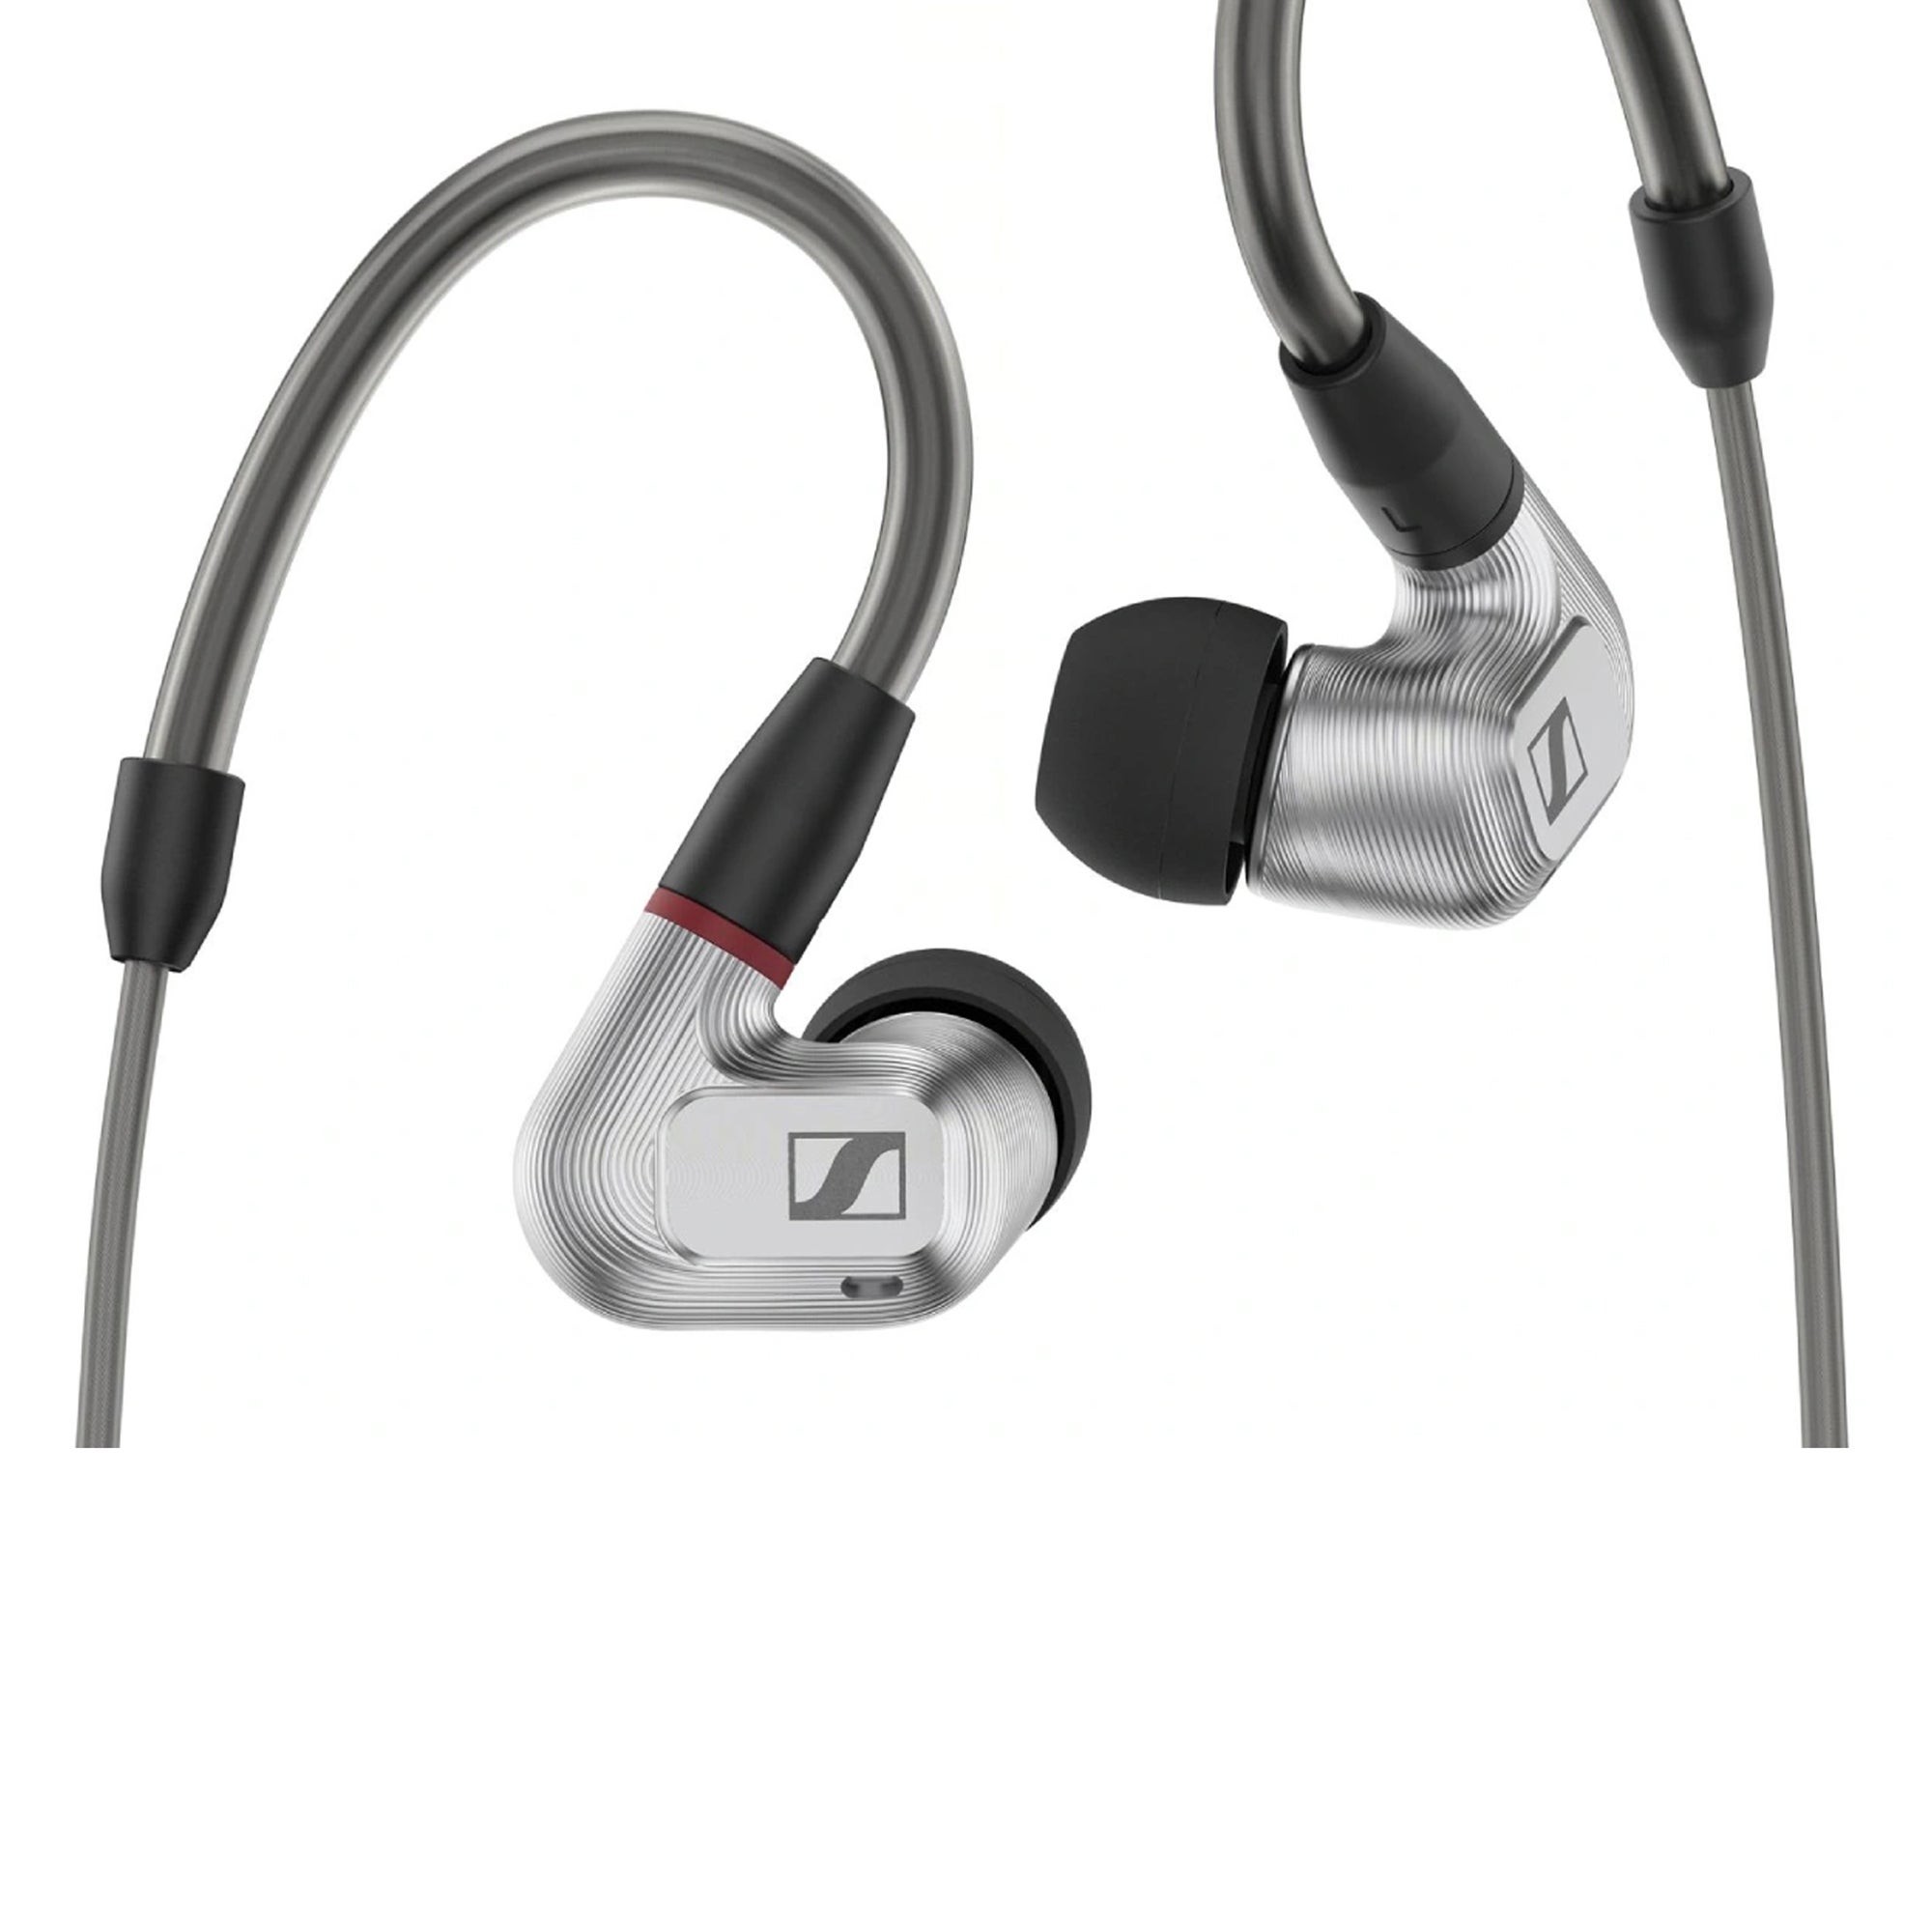 IE 900 Audiophile In-Ear Headphones